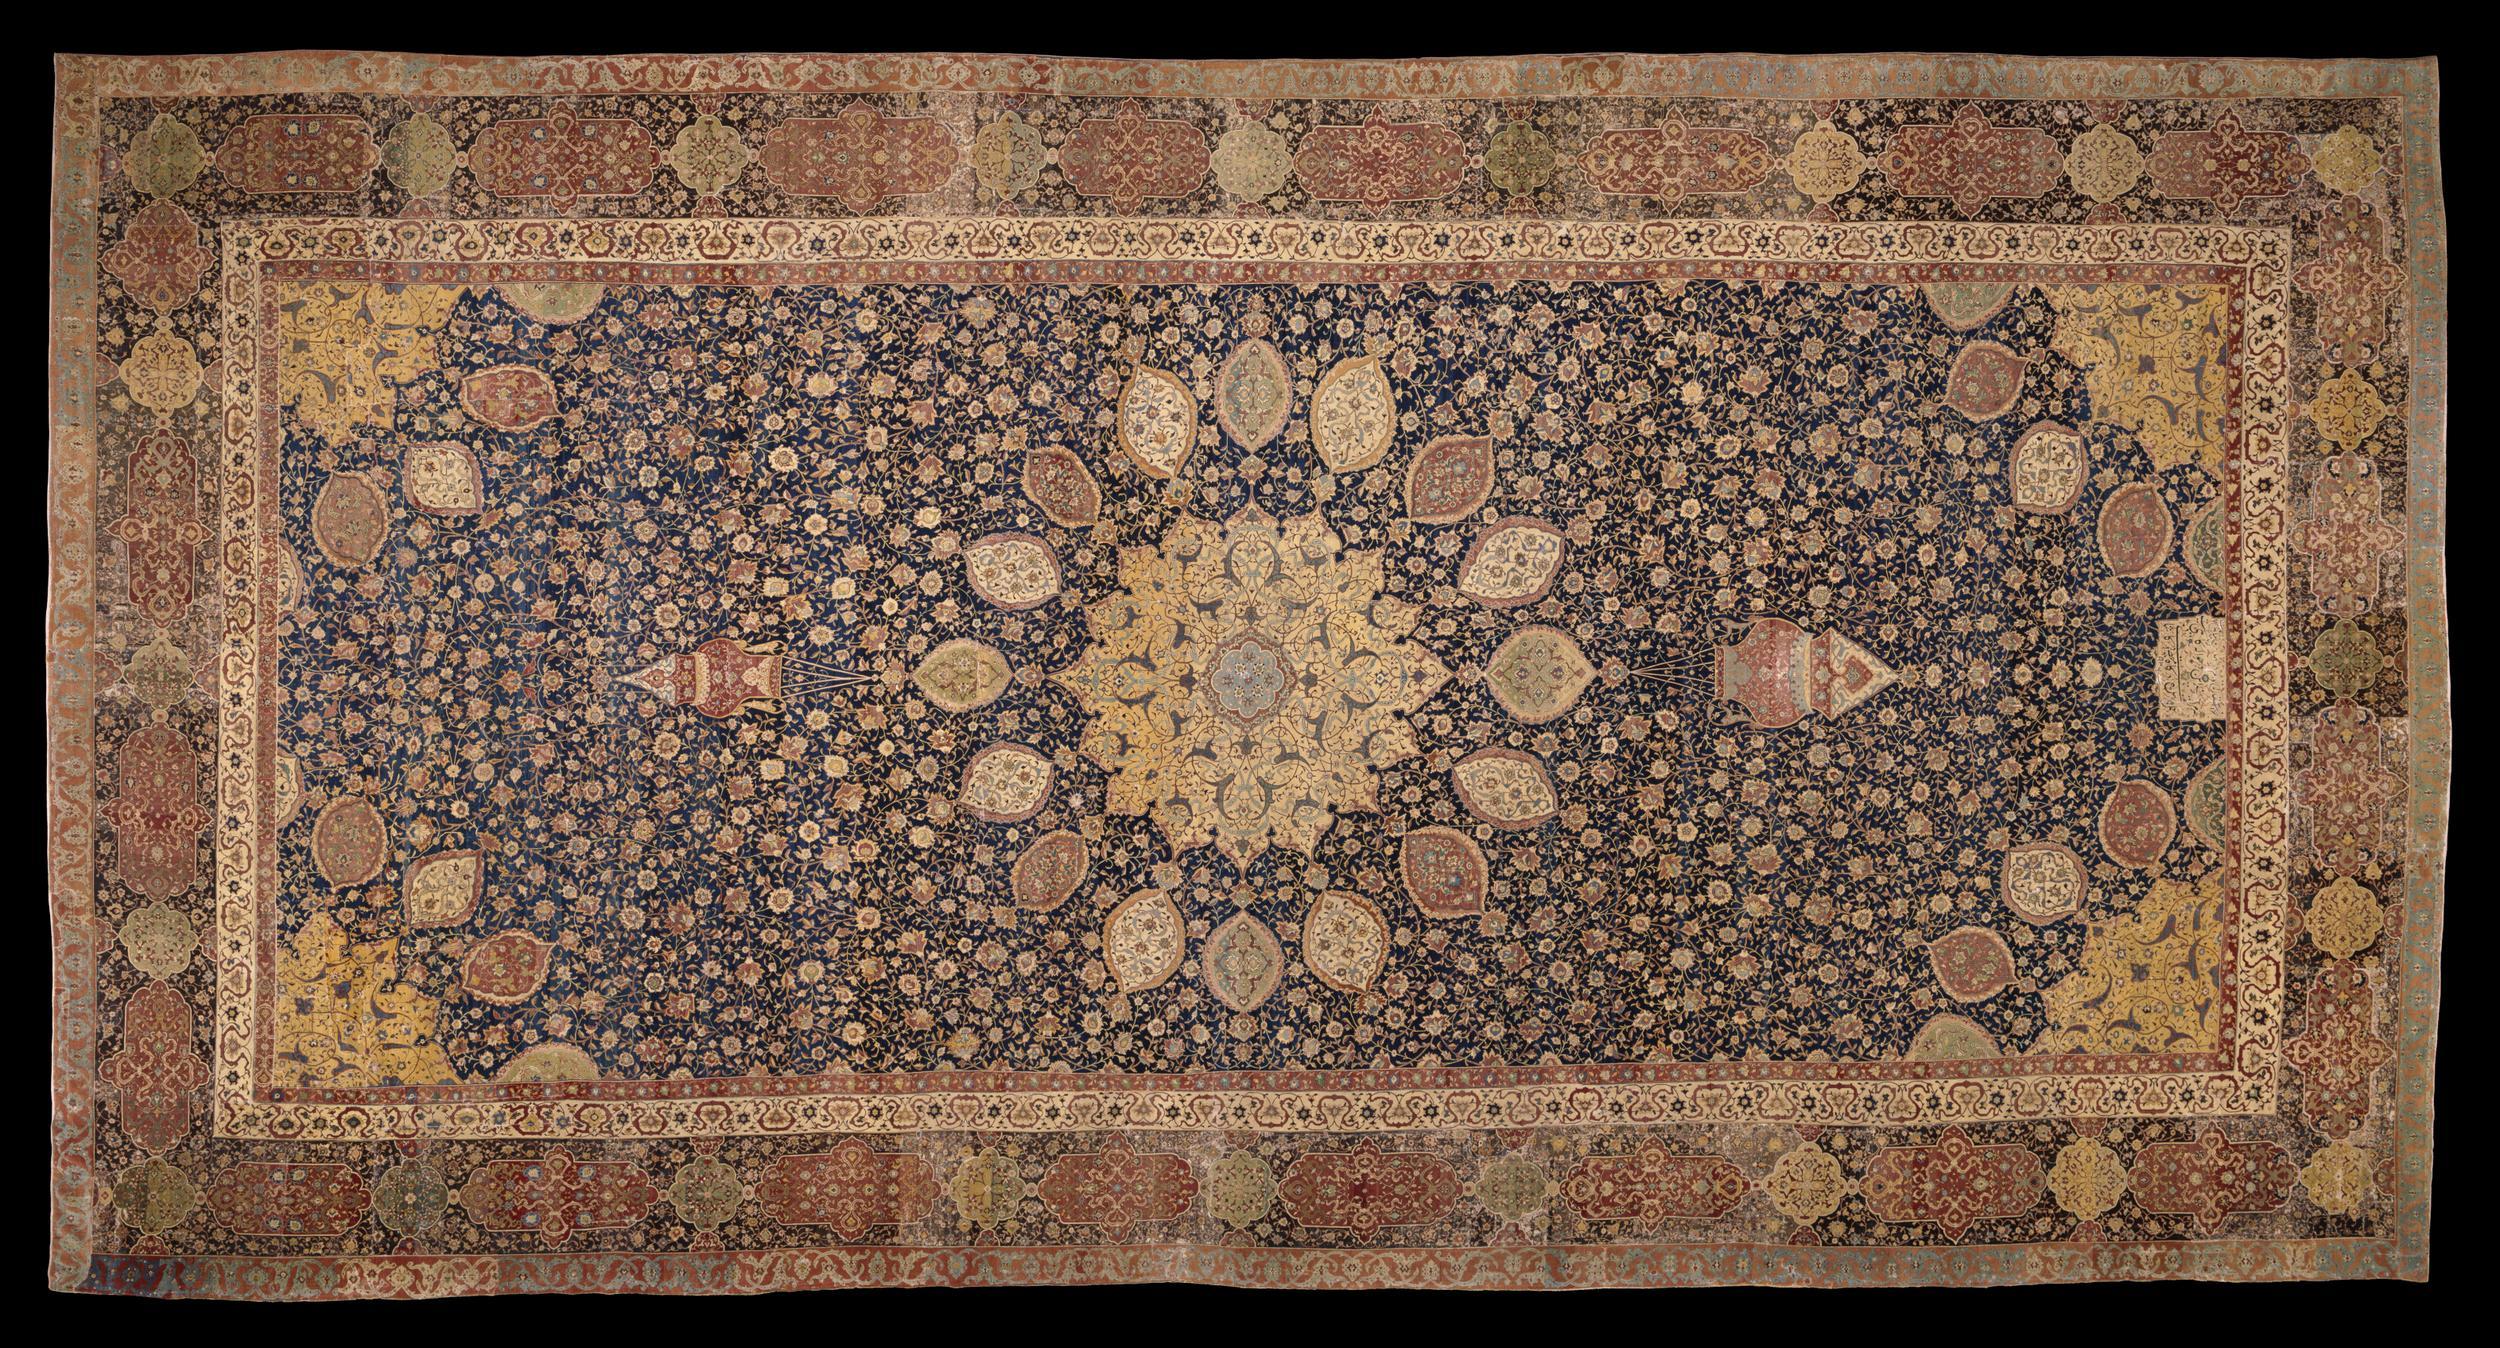 Ardabil Teppich by Unbekannter Künstler - 1539 - 1540 - 11 x 5,35 m Victoria and Albert Museum